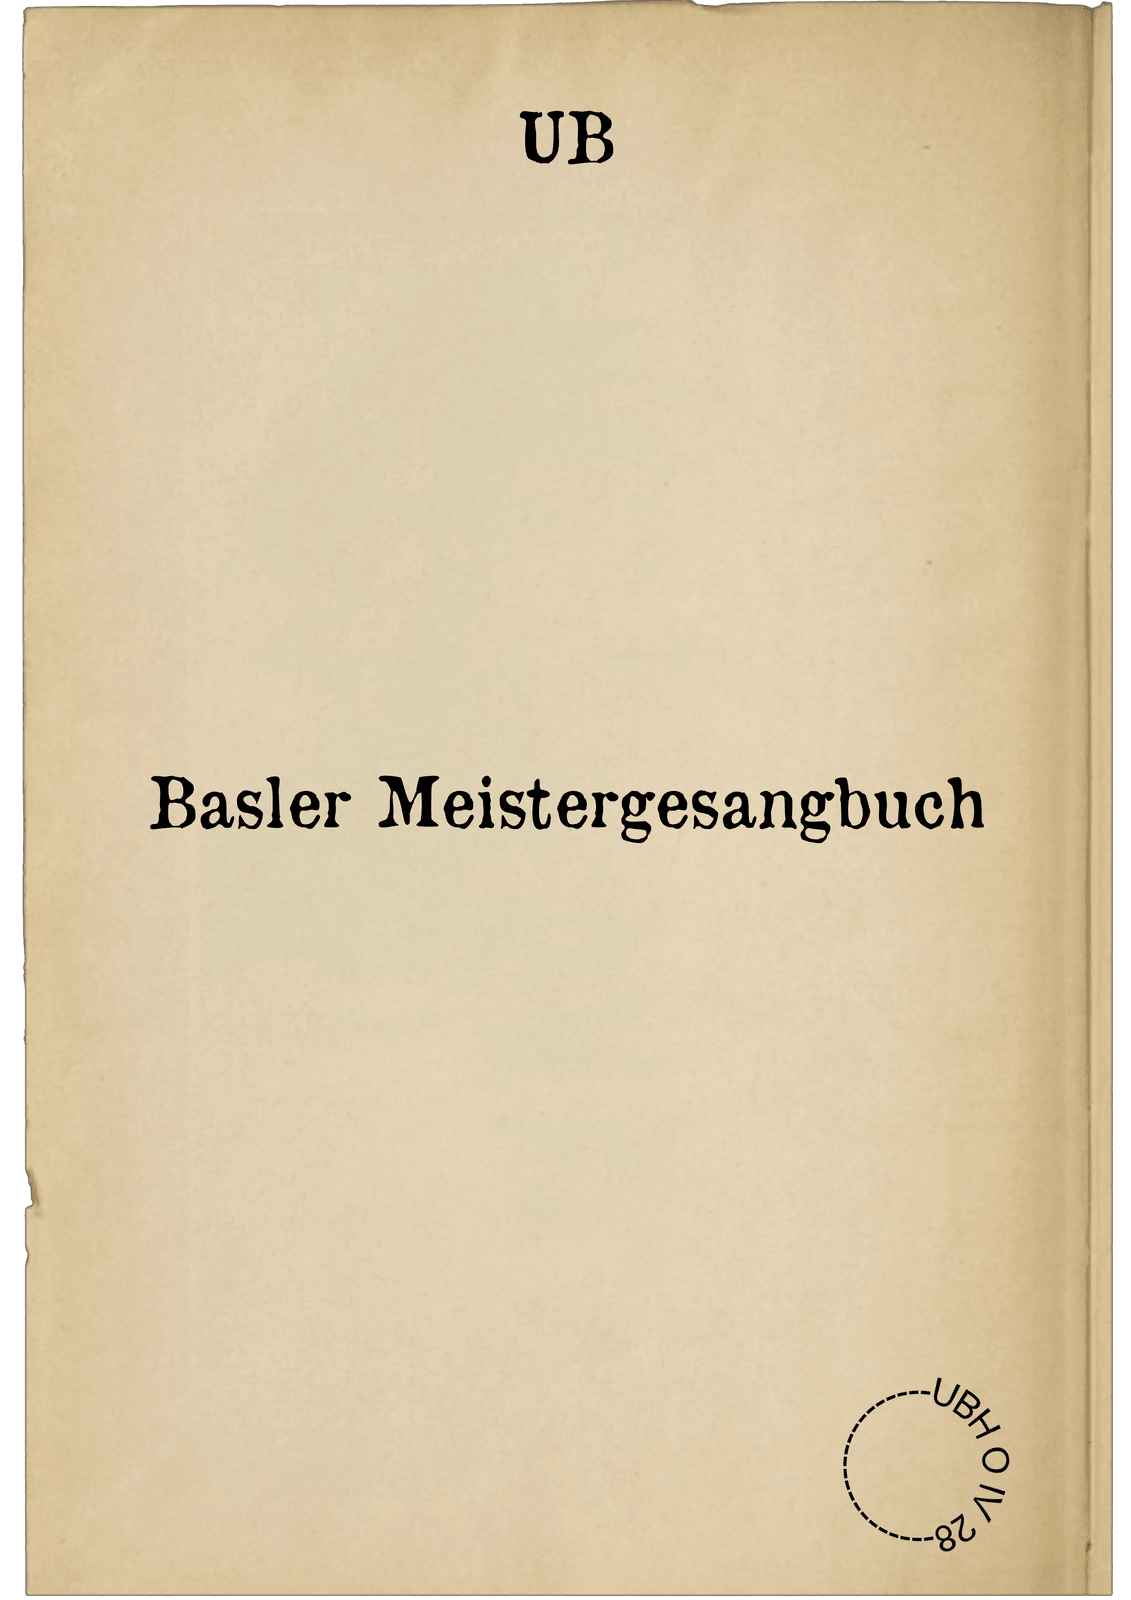 Basler Meistergesangbuch